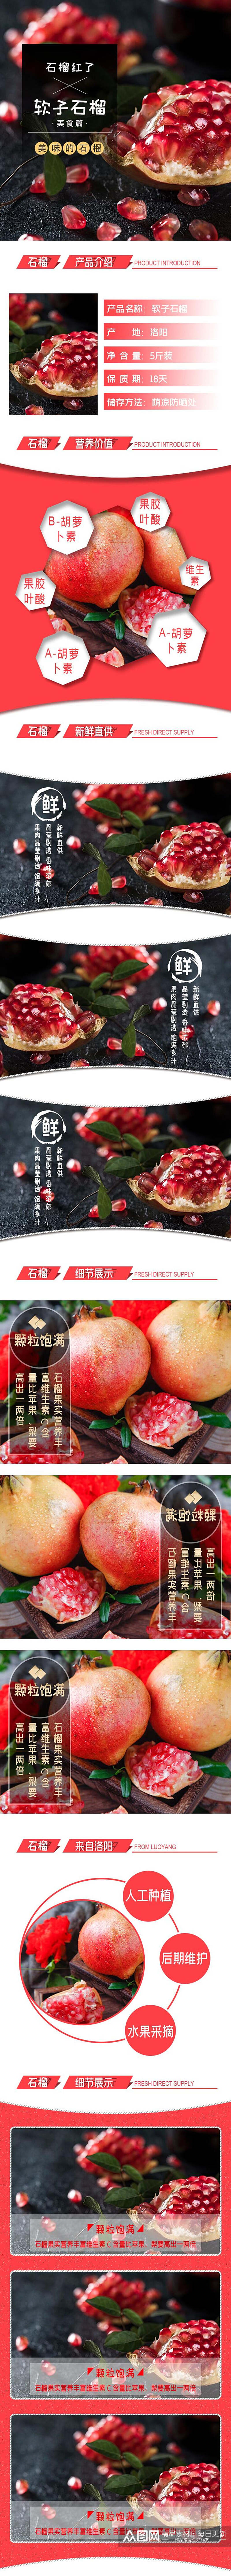 水果软籽石榴食品电商详情页素材